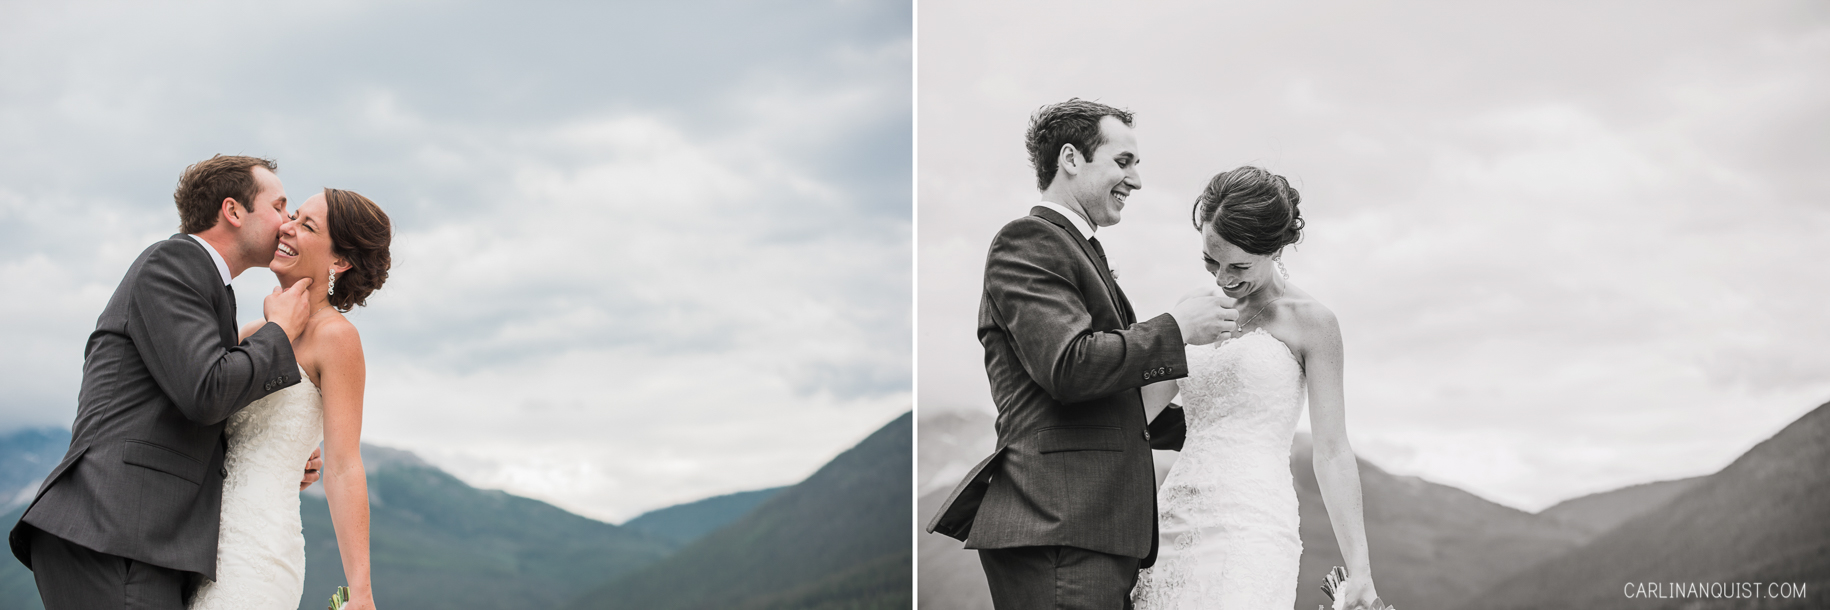 Mountain Wedding Photos | Canmore Wedding Photographer